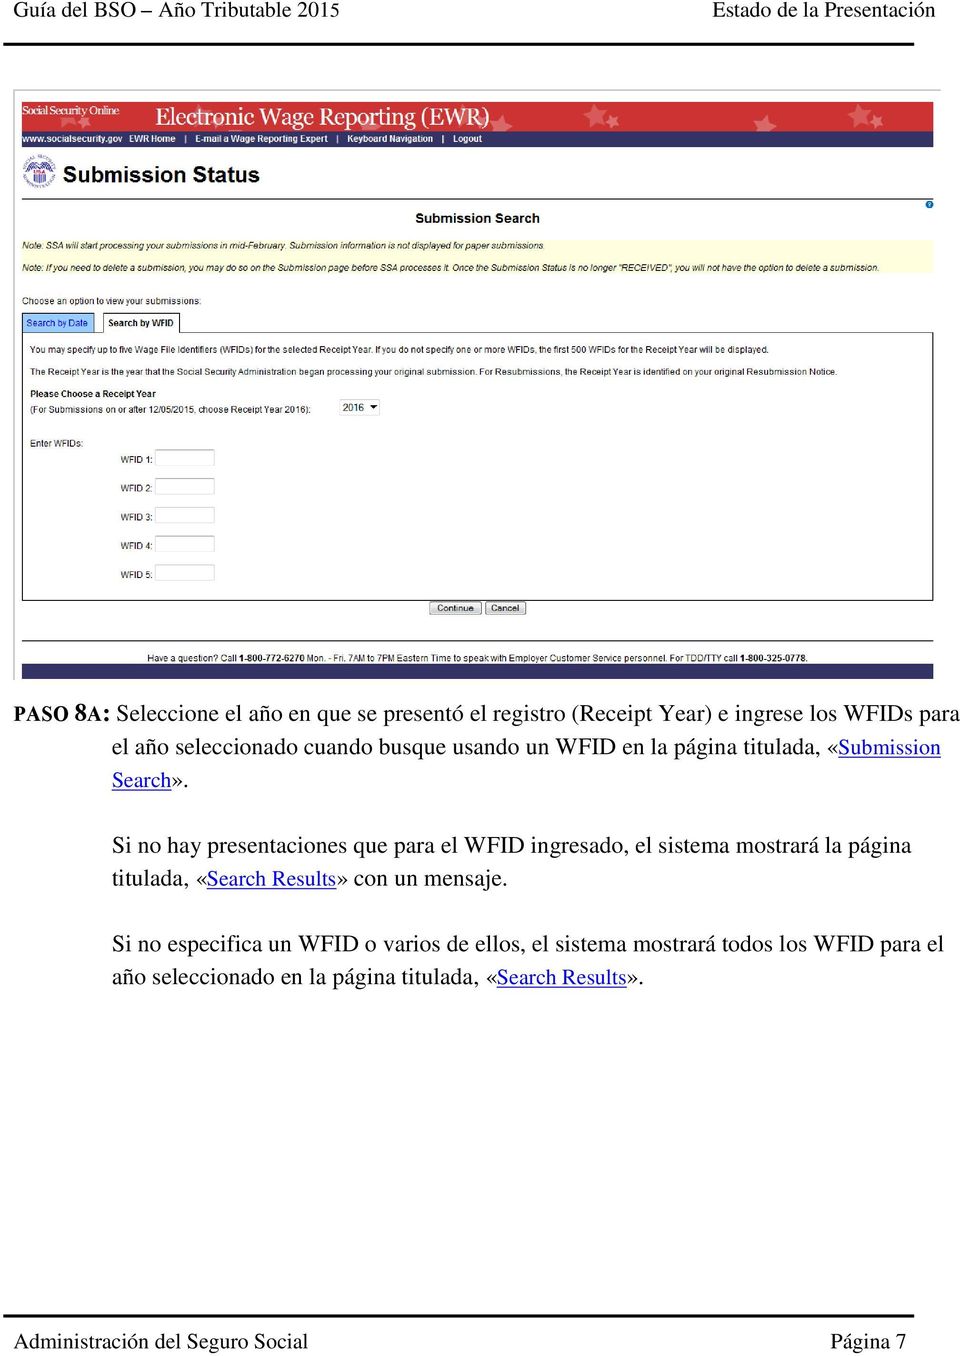 Si no hay presentaciones que para el WFID ingresado, el sistema mostrará la página titulada, «Search Results» con un mensaje.